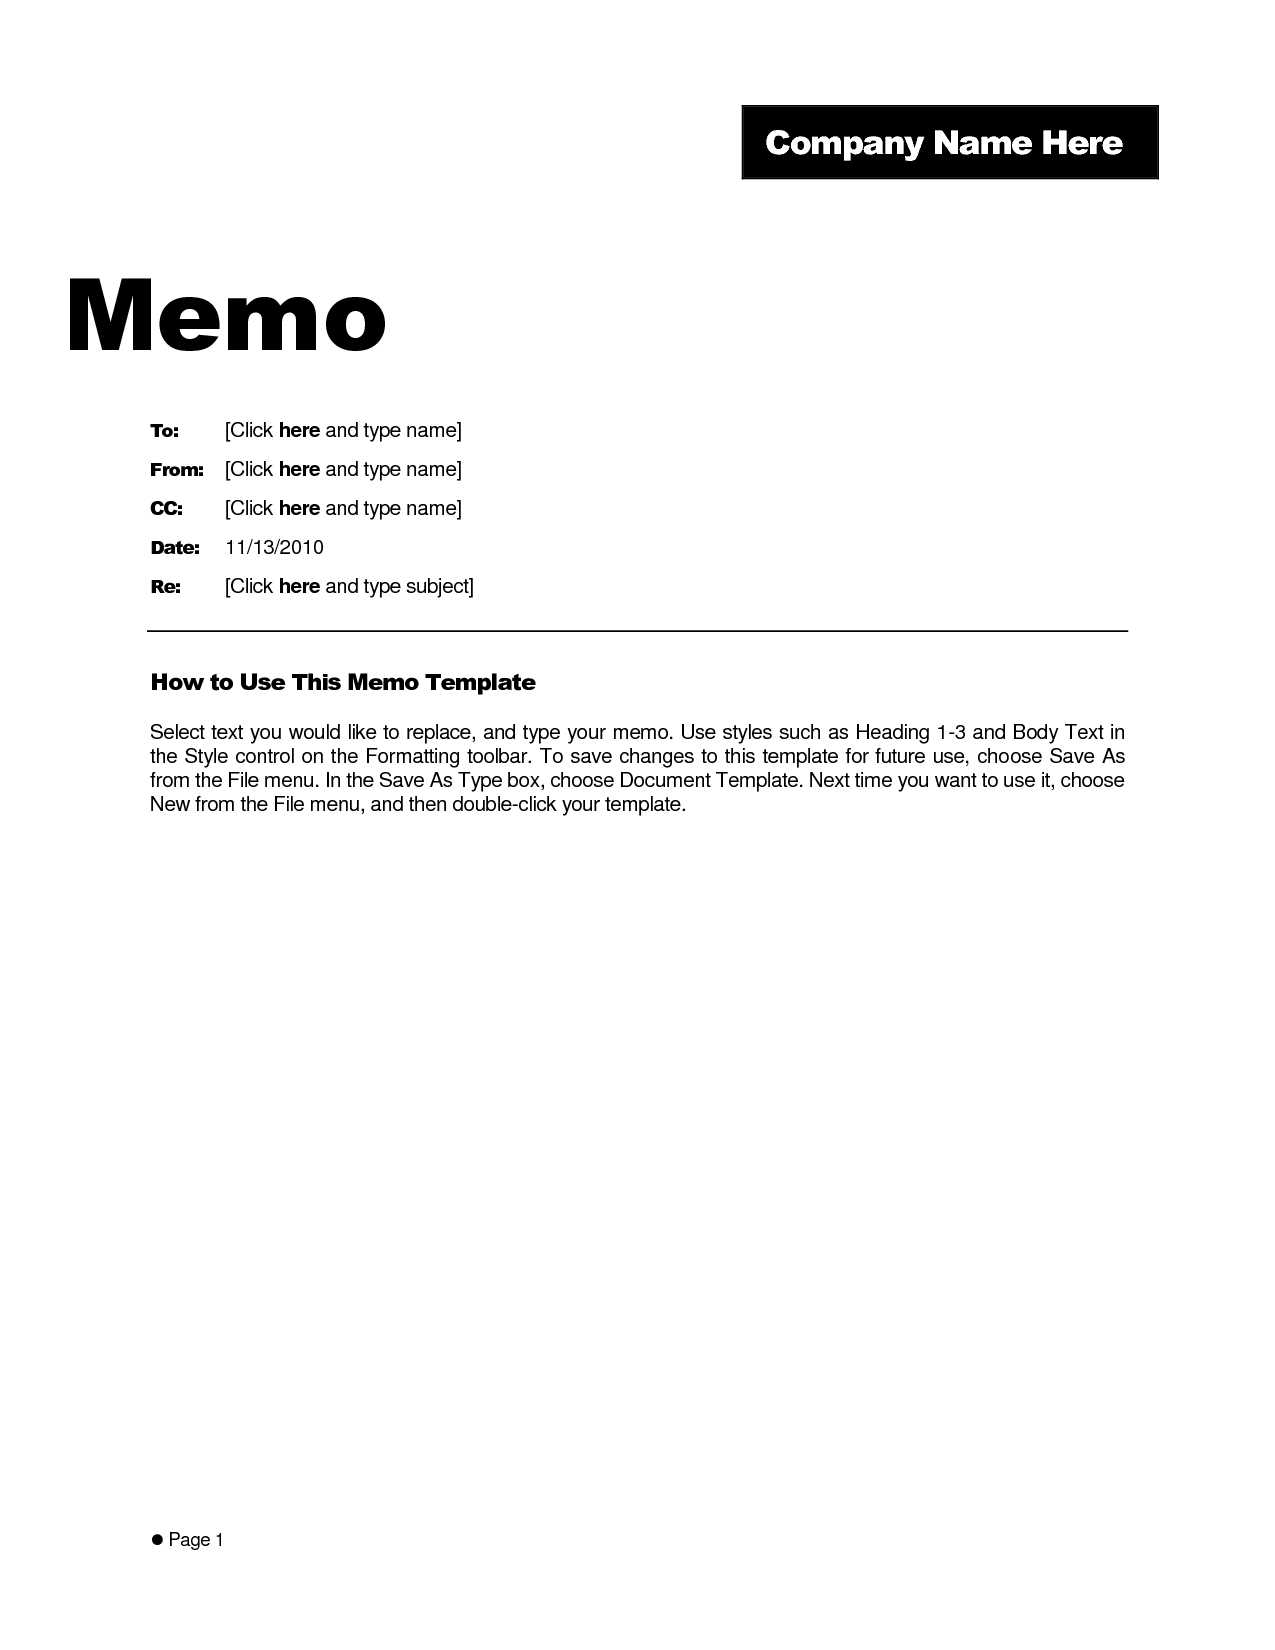 Free Memo Template Word 2010 – Kerren Regarding Memo Template Word 2010